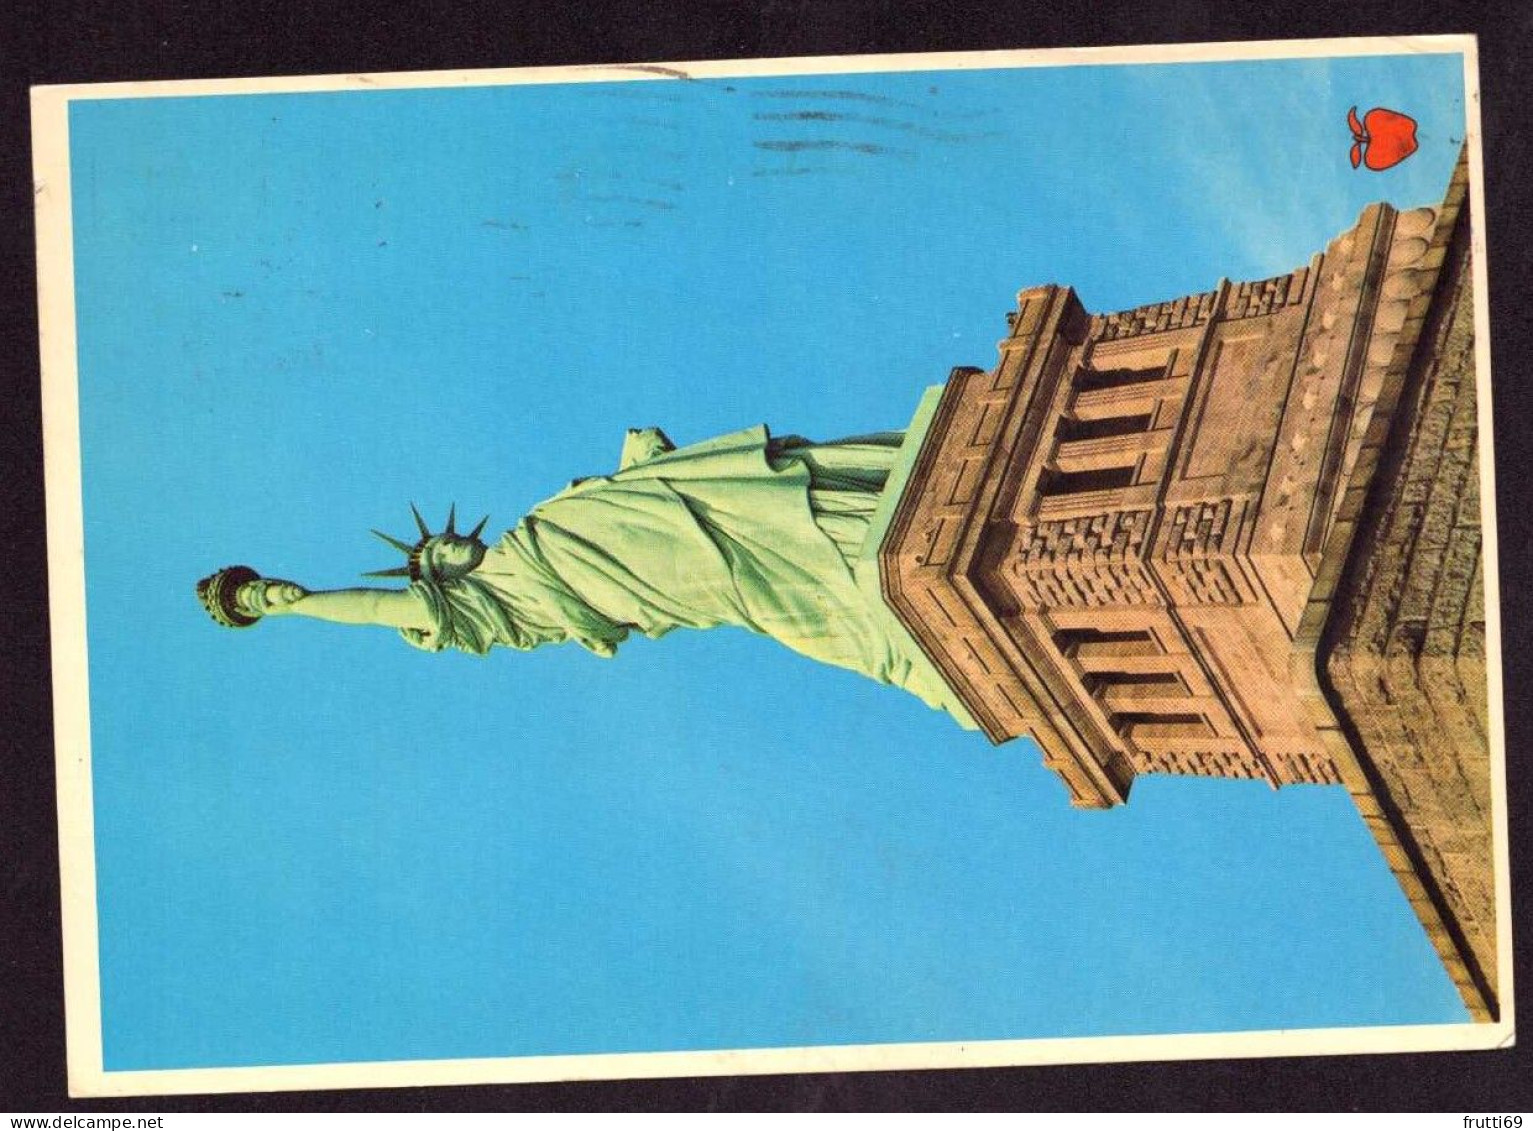 AK 127459 USA - New York City - Statue Of Liberty - Statue Of Liberty